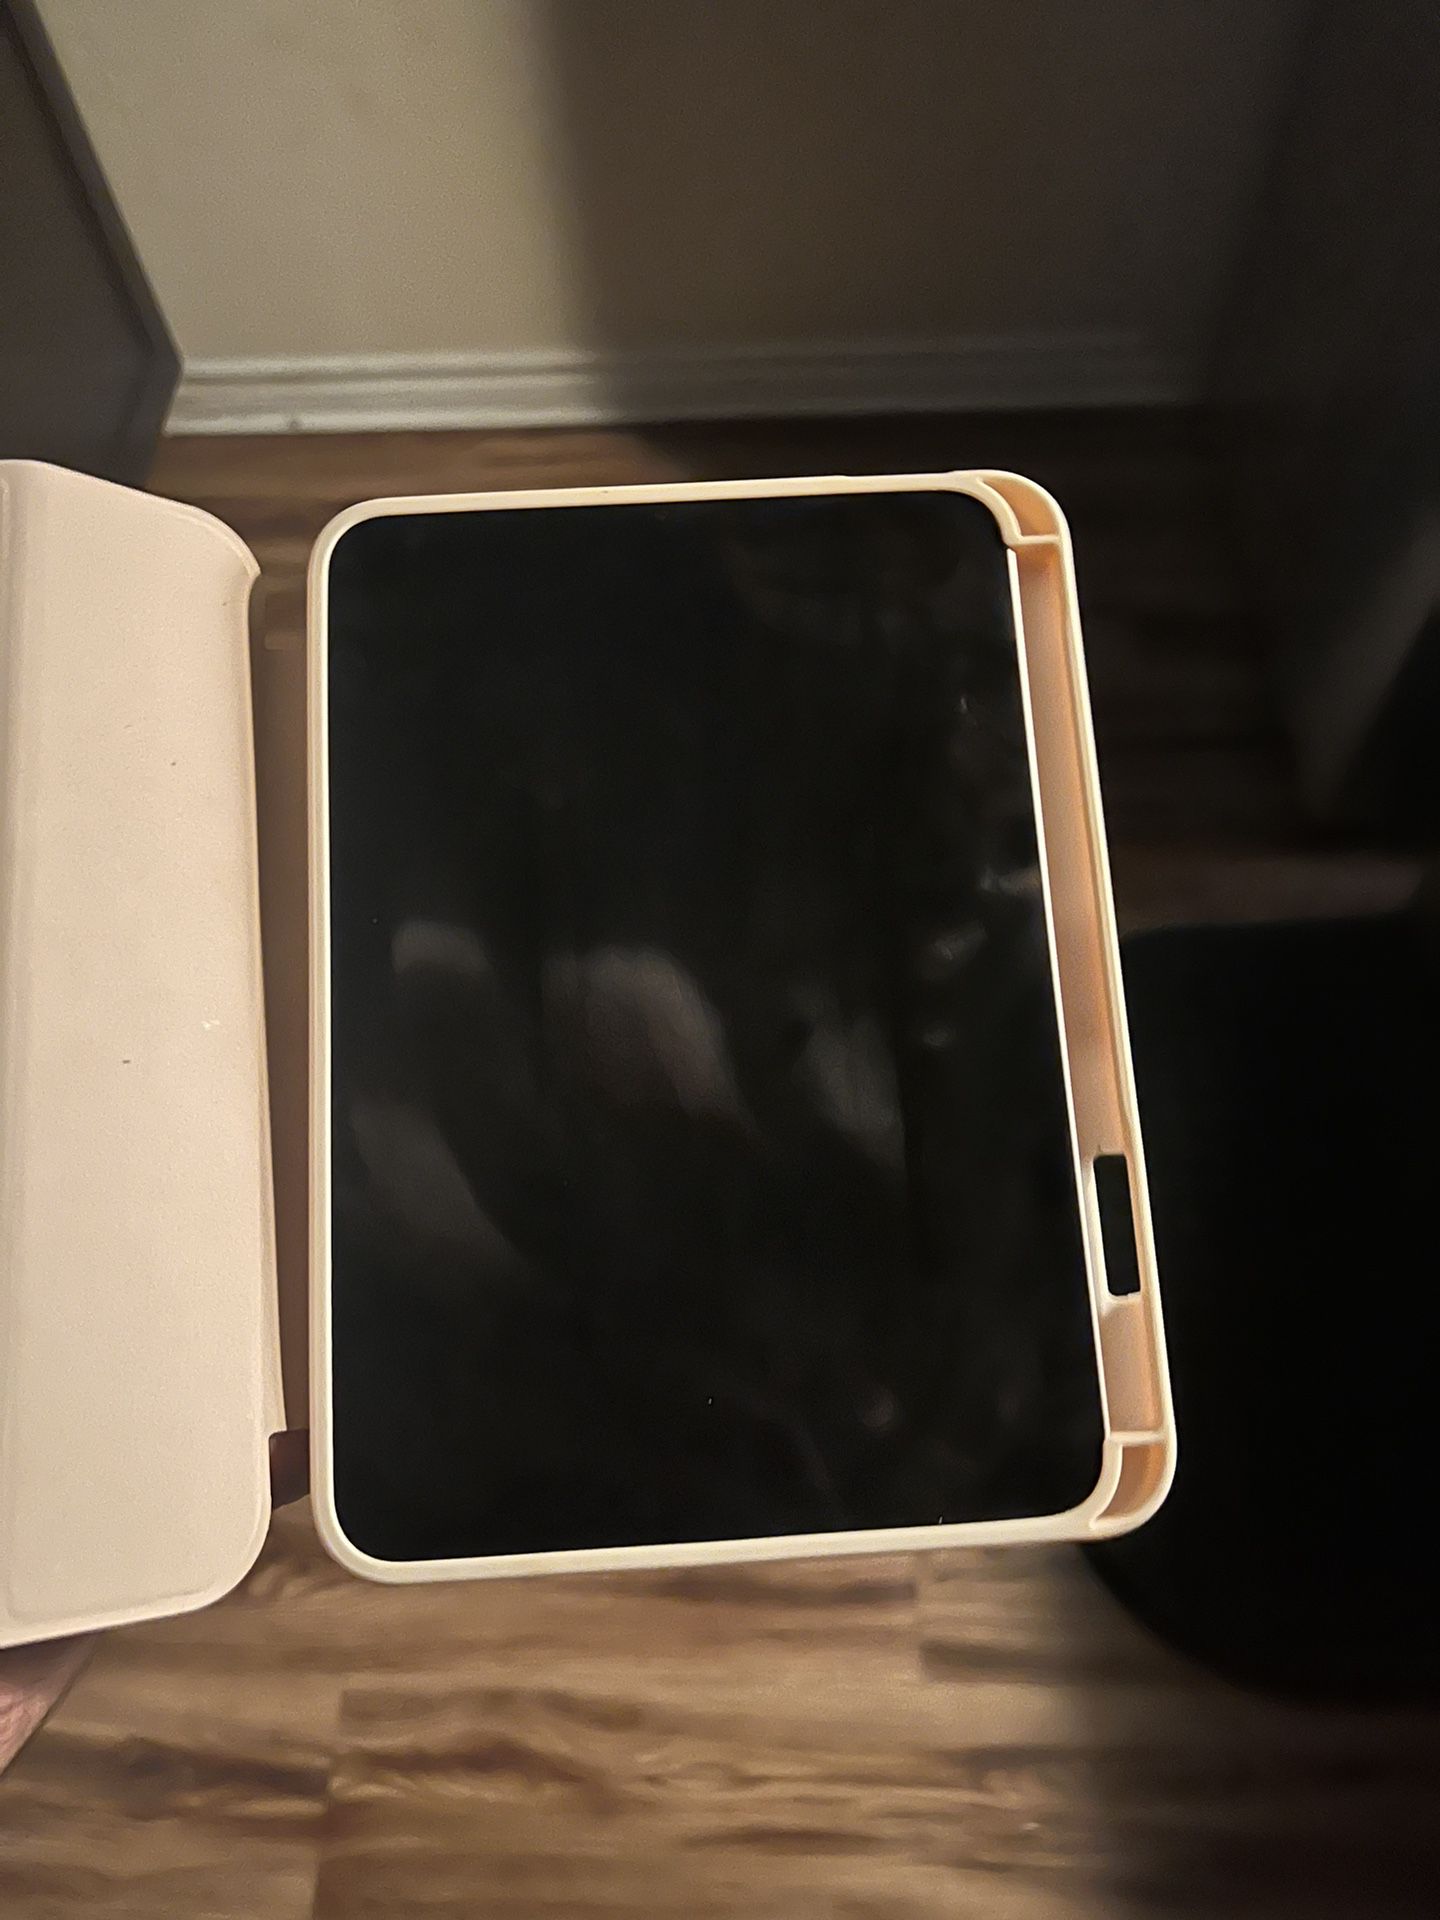 iPad Mini 6th Generation (WiFi + Cellular)